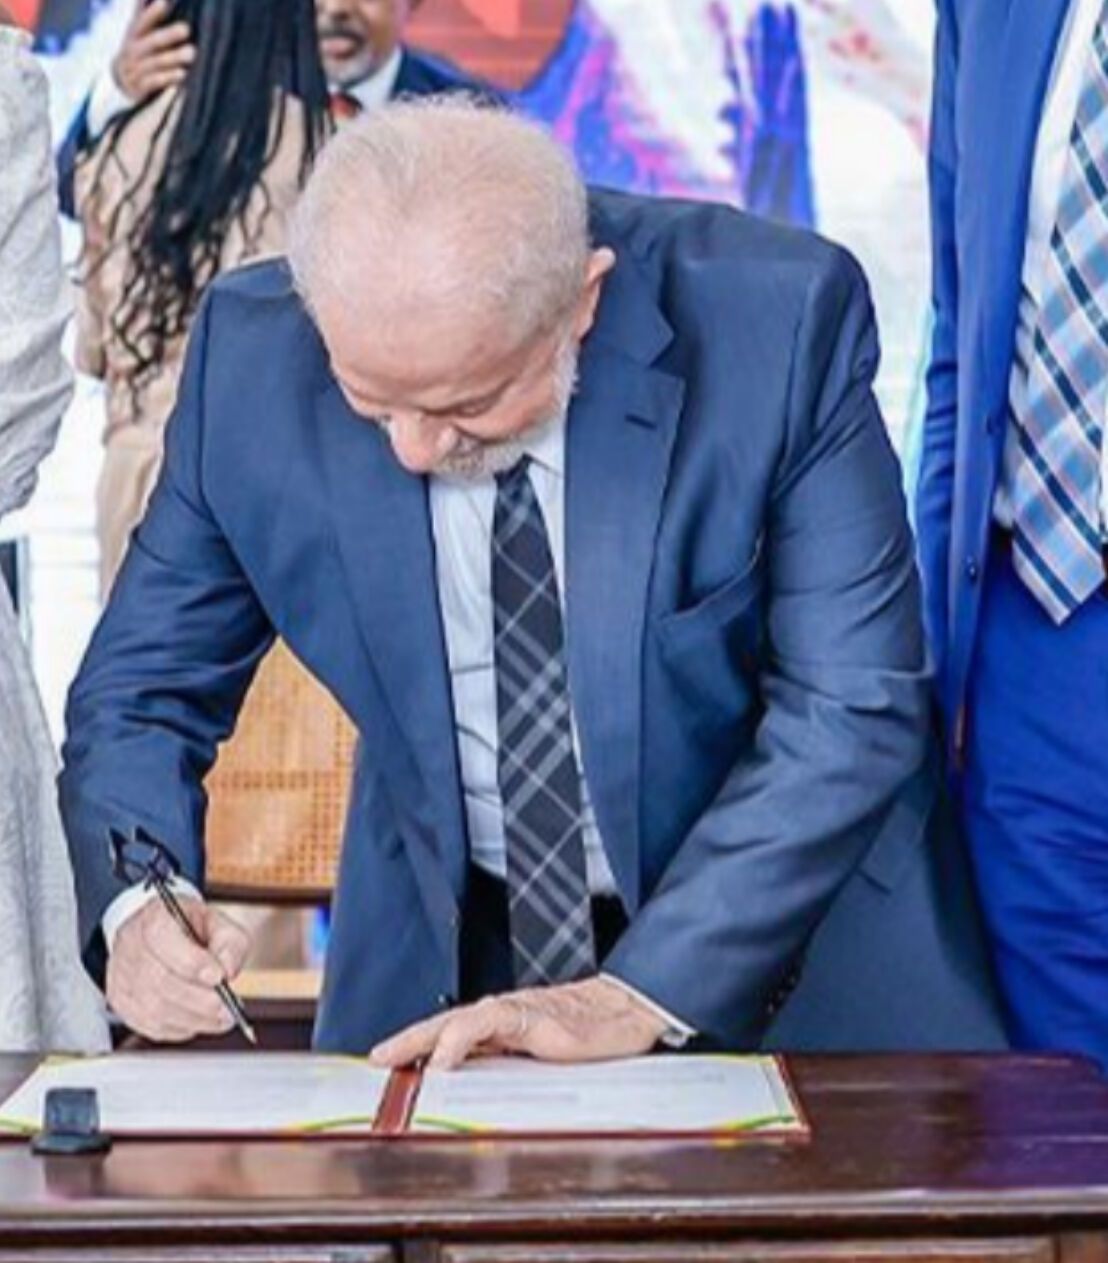 Imagem do presidente assinando o documento com a caneta artesanal